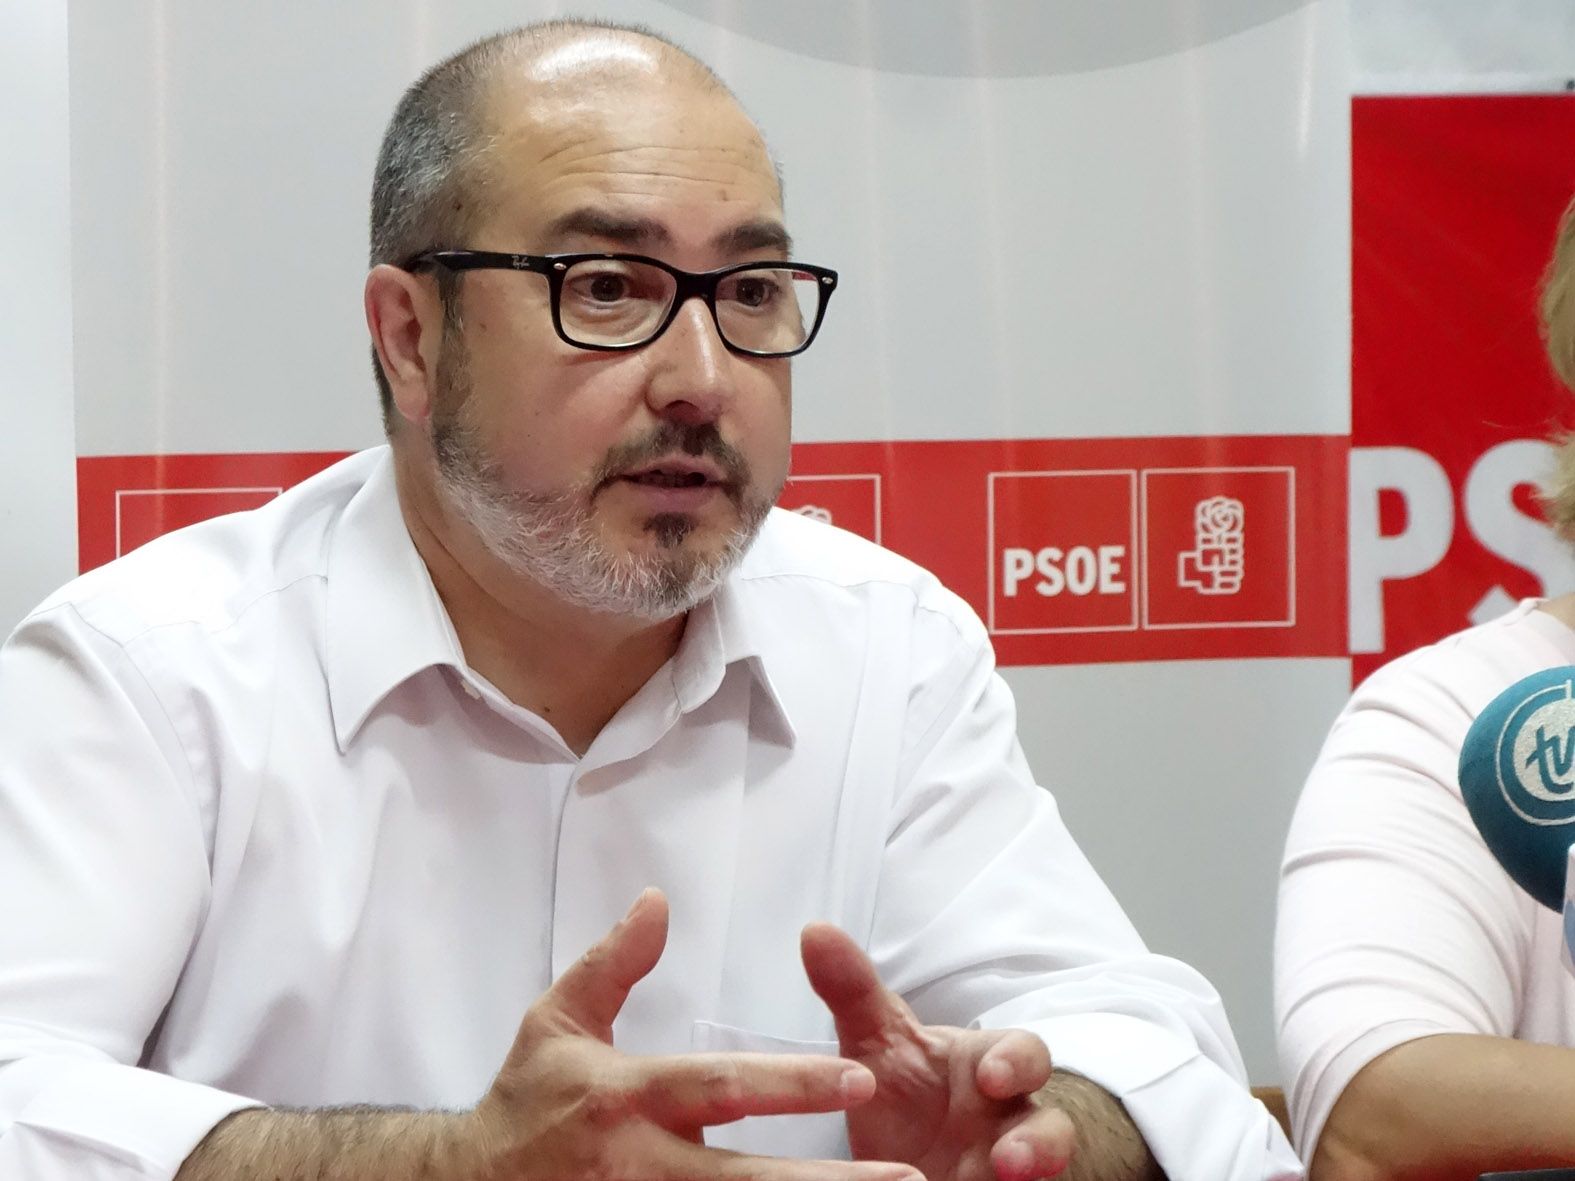 Miguel López, ha sido absuelto de la acusación de supuesto delito electoral